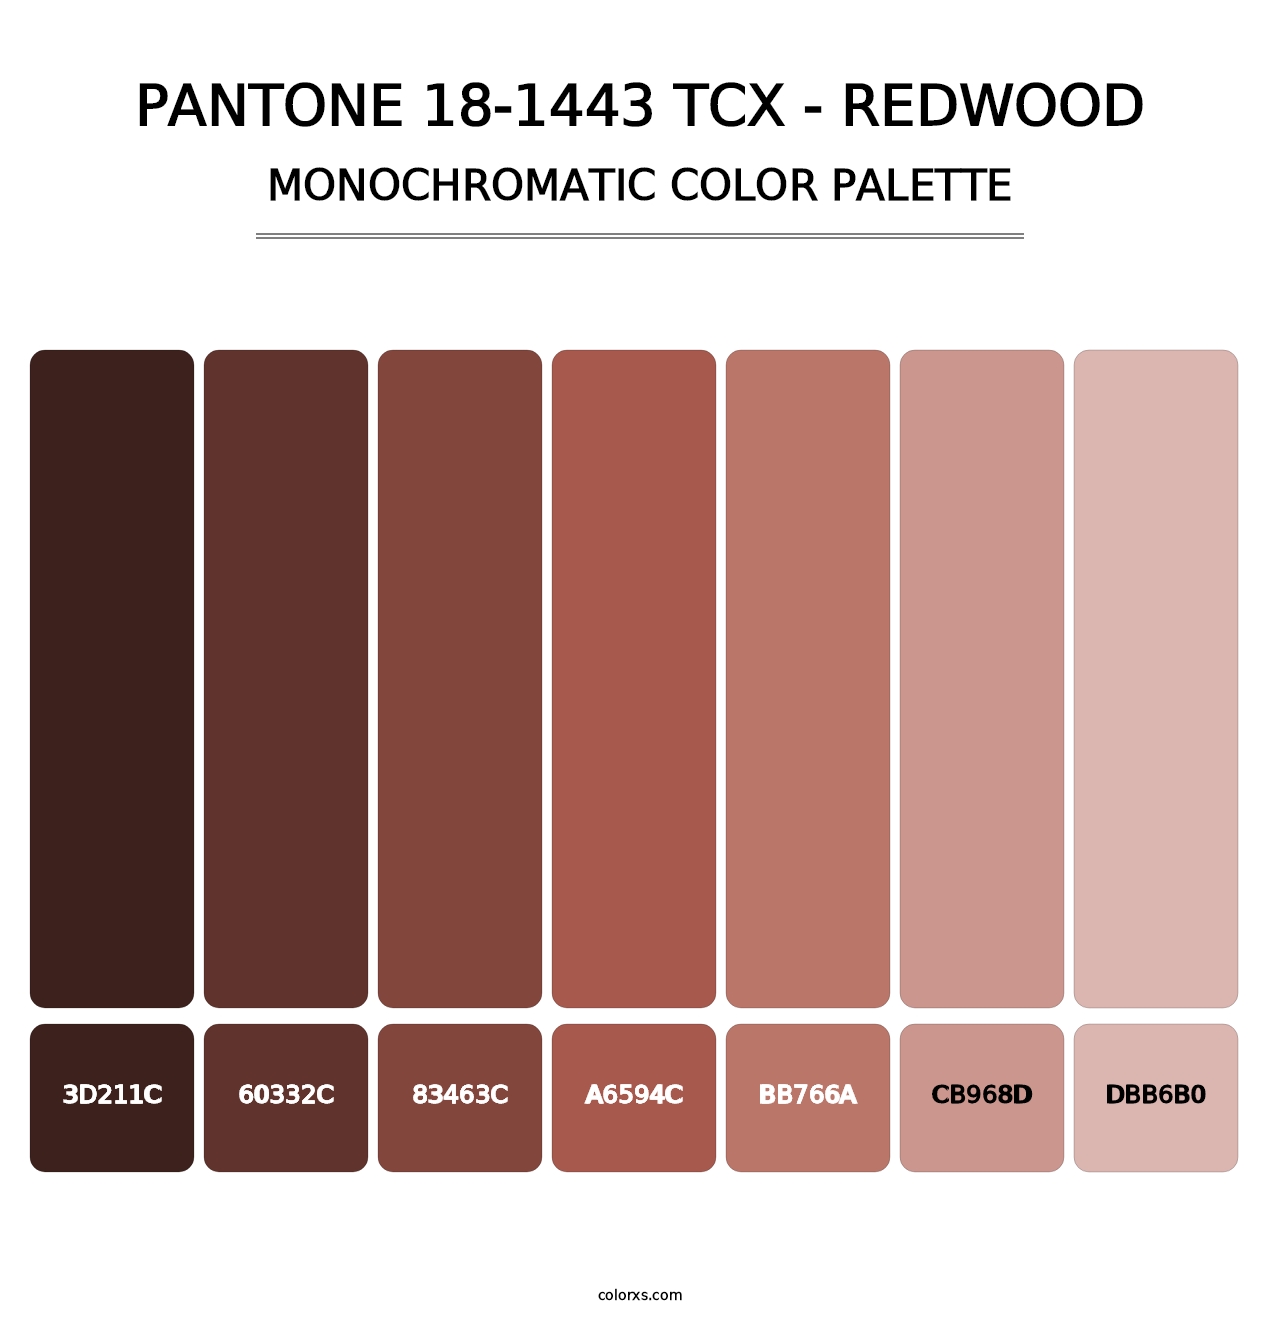 PANTONE 18-1443 TCX - Redwood - Monochromatic Color Palette